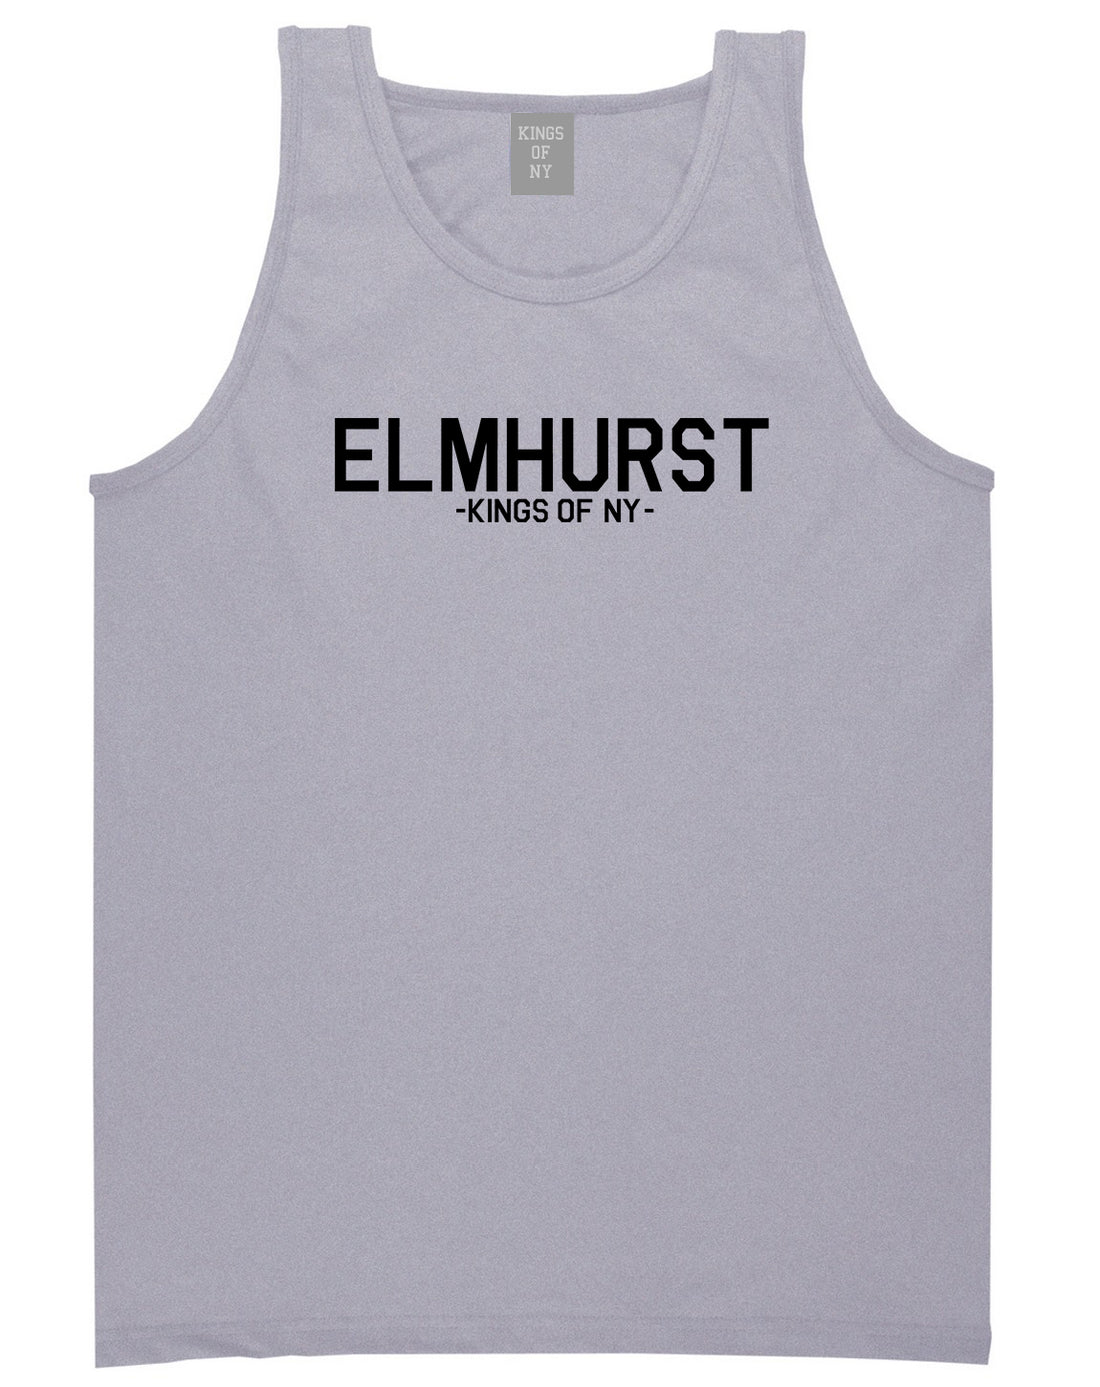 Elmhurst Queens New York Mens Tank Top Shirt Grey